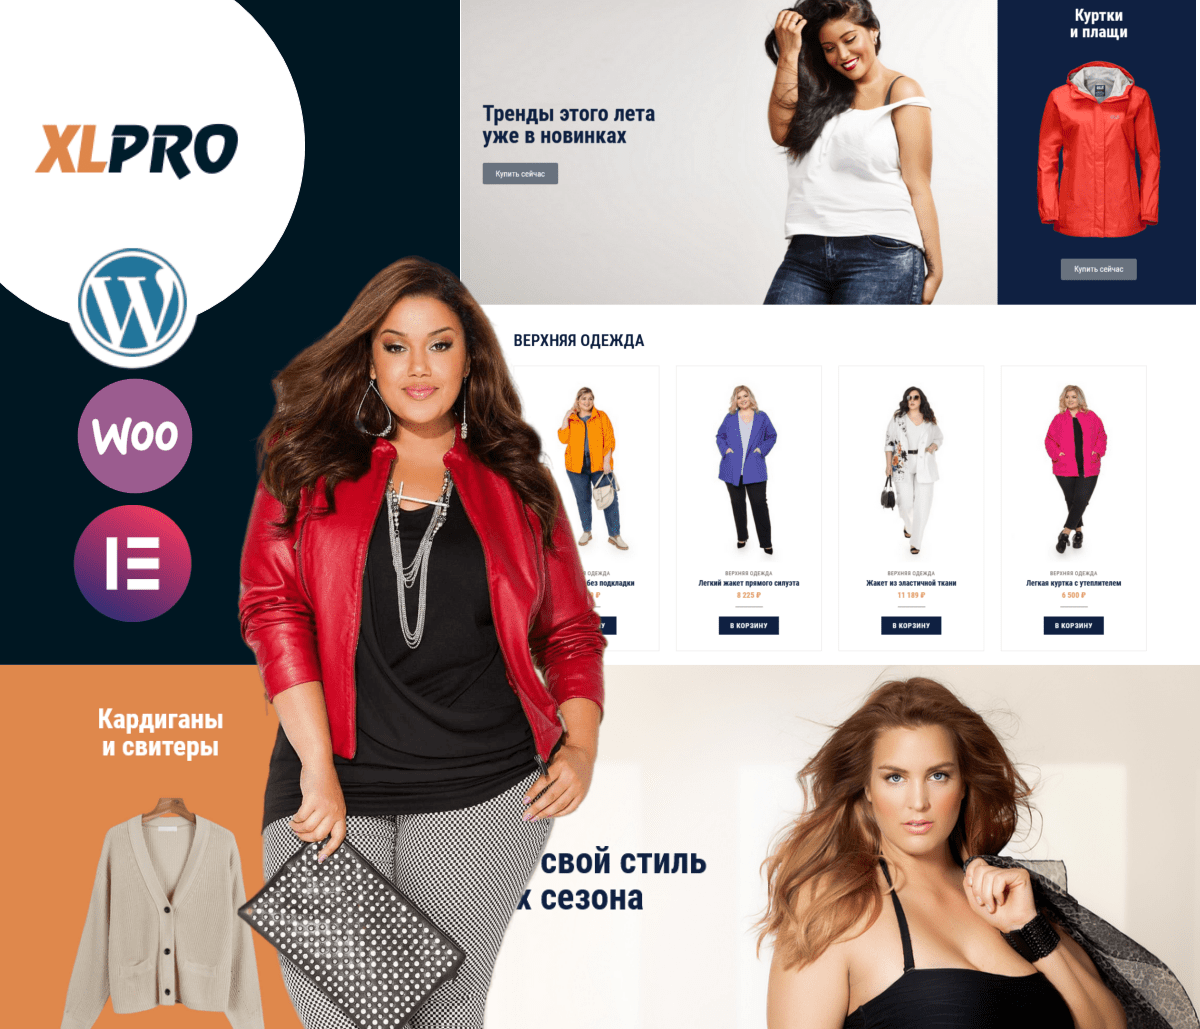 XLPRO – Магазин одежды для полных на WordPress